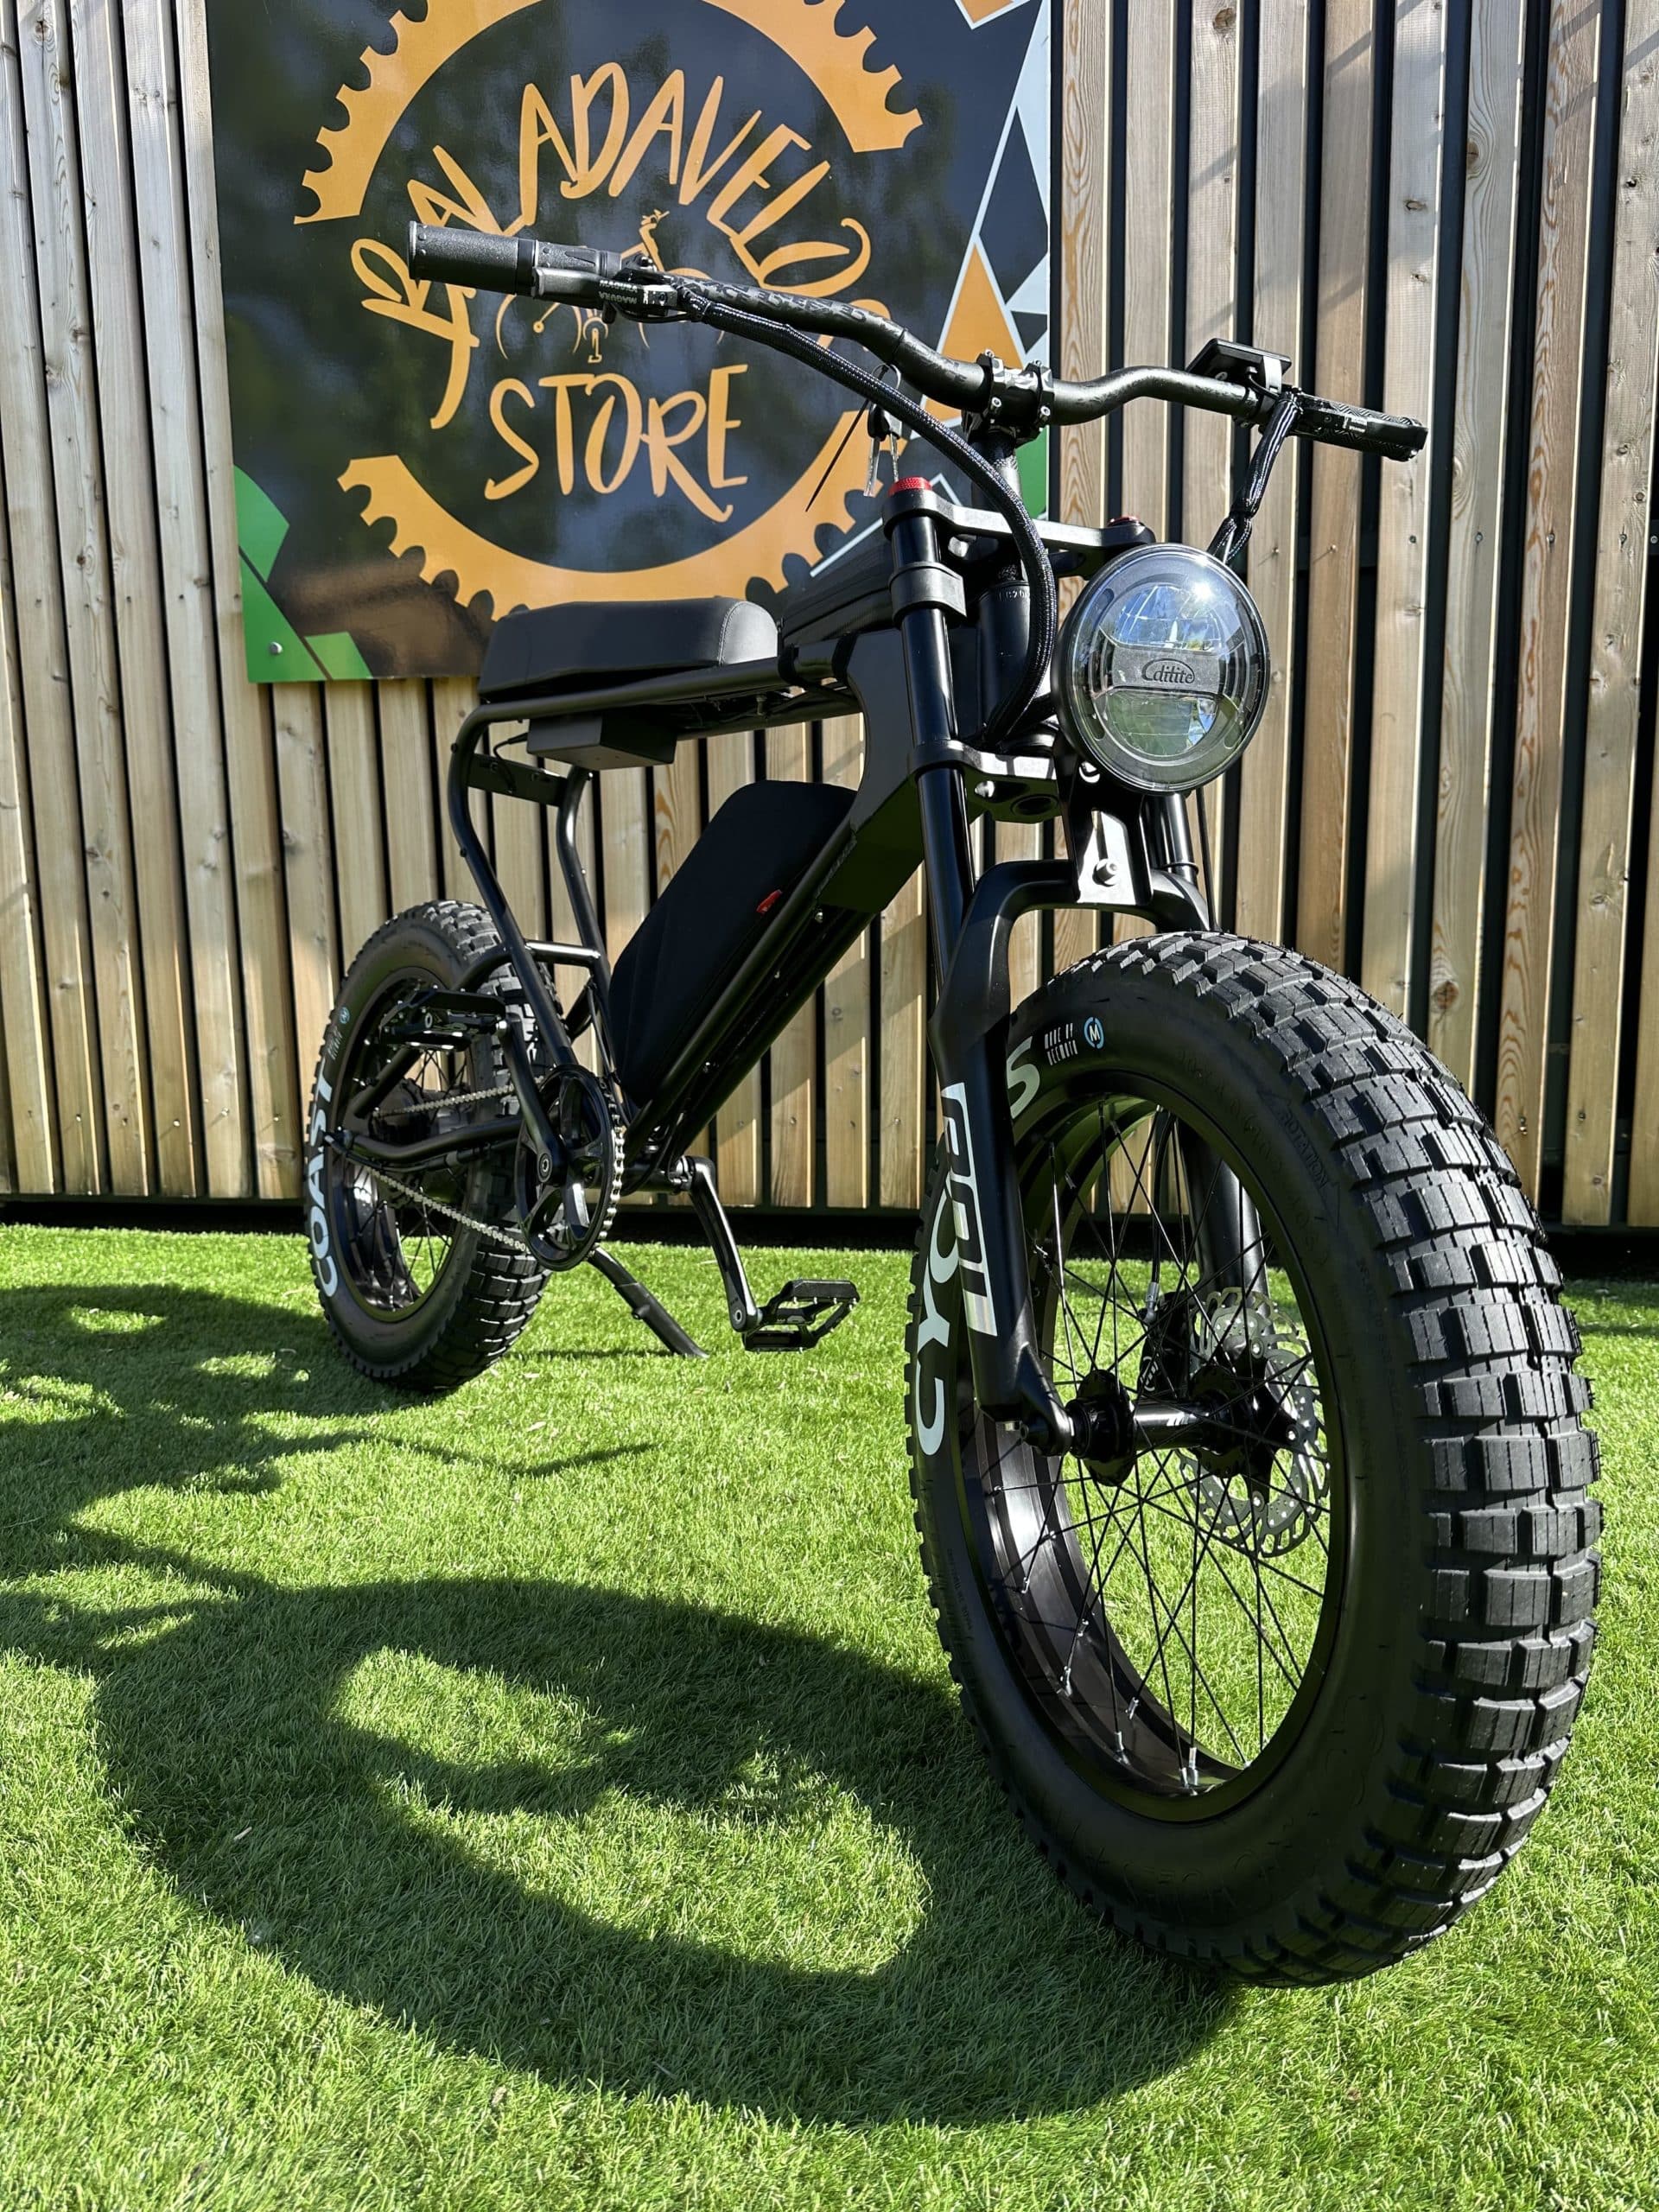 Vélo électrique freego roots customisé par balad'à vélos store, vélo de ville, vélo cross tout-terrain ressemblant au Super 73